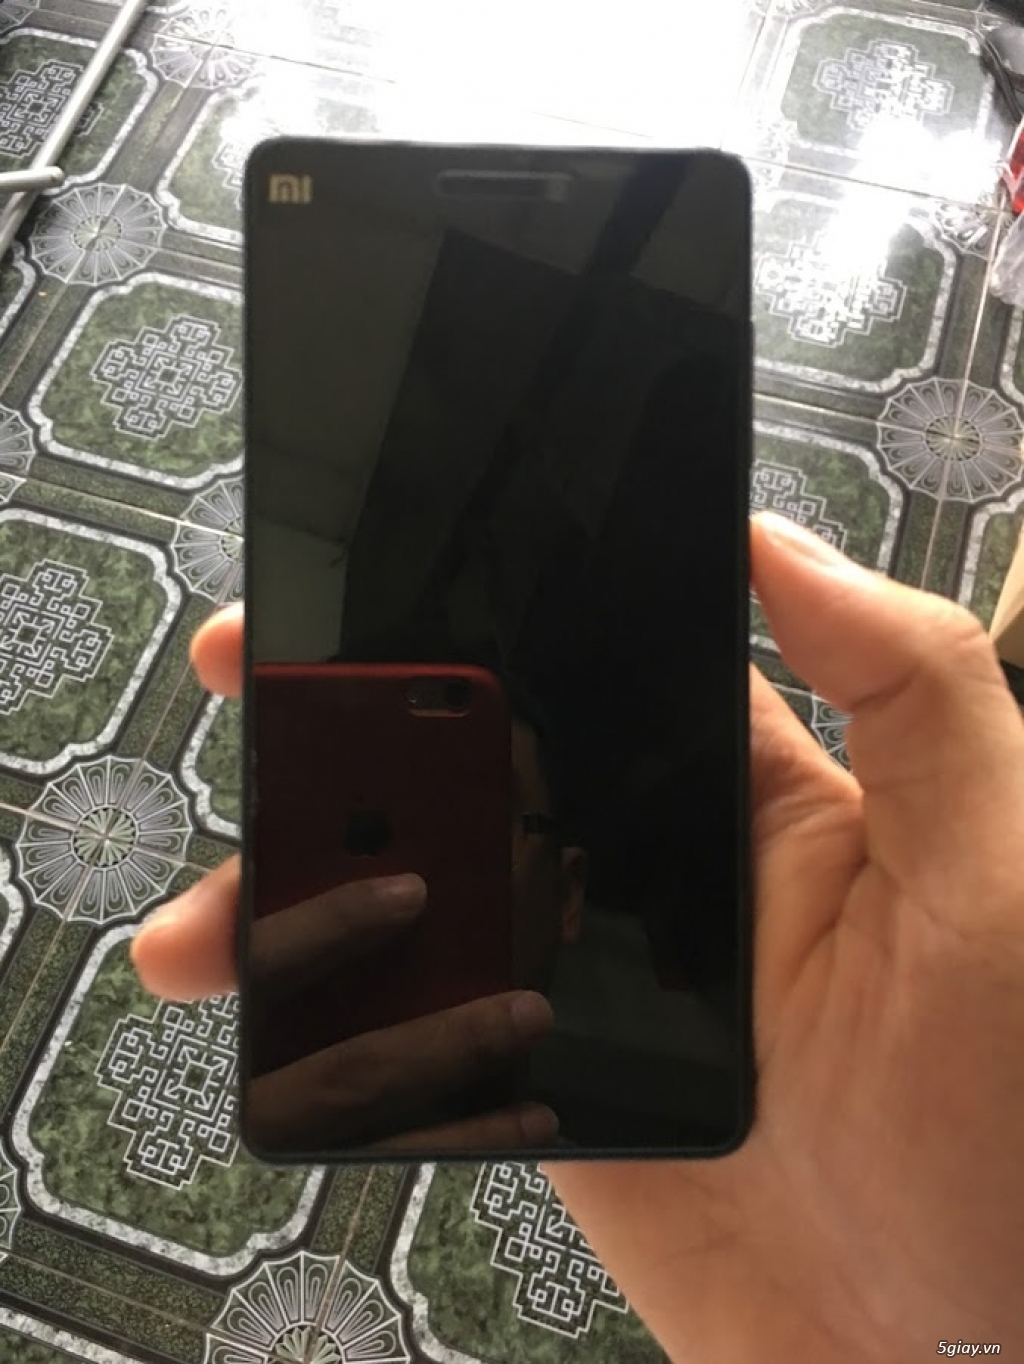 Xiaomi mi4c ram 2gb rom 16gb - 1